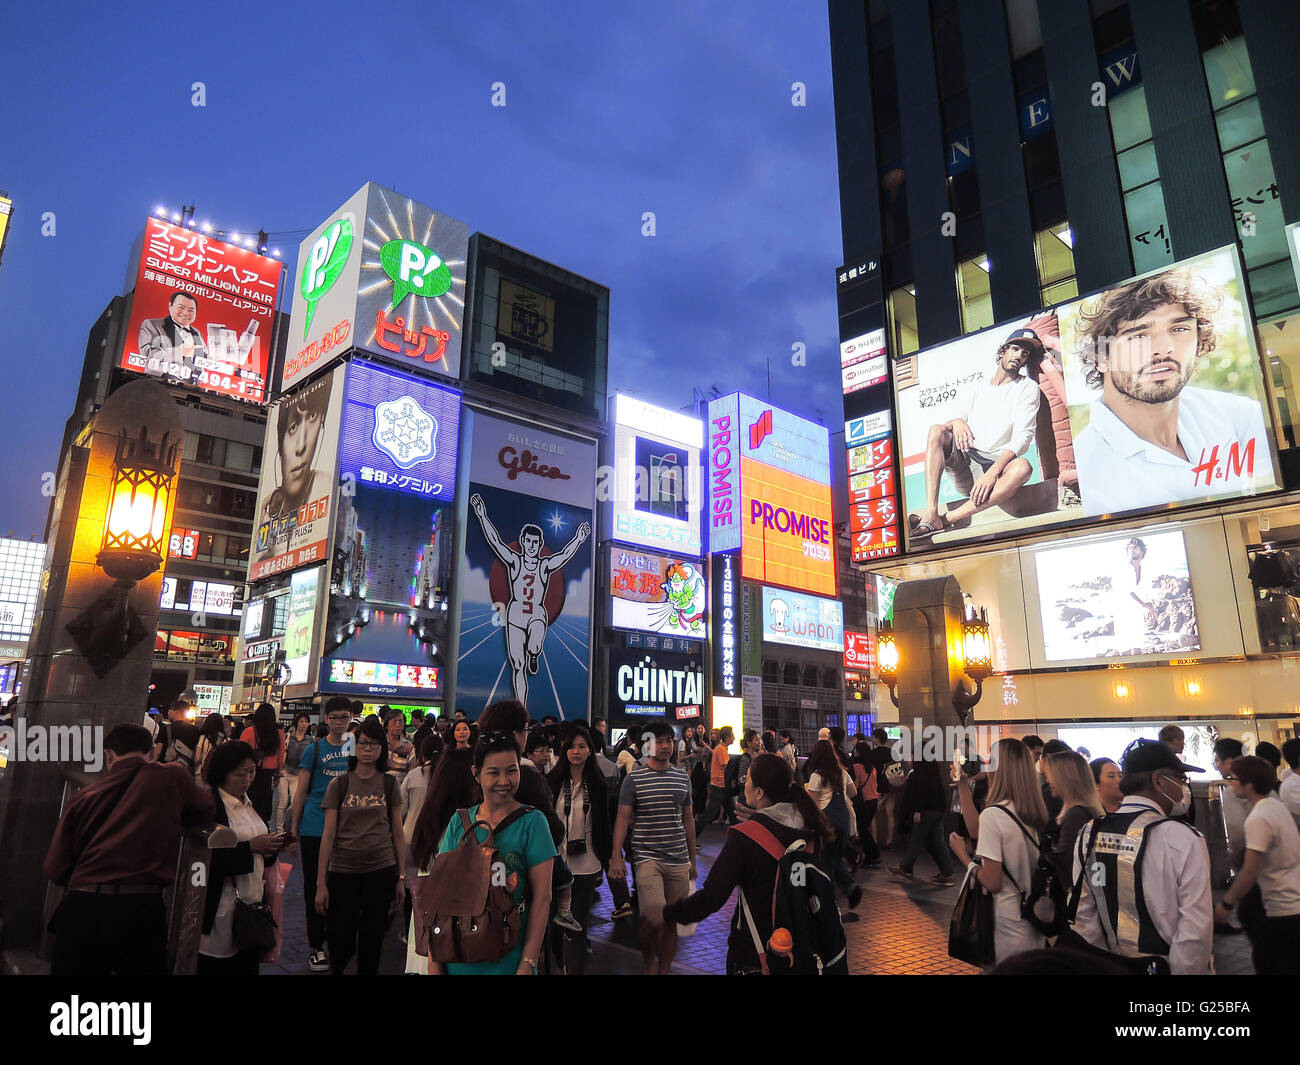 OSAKA JAPON 20 mai 2016, des voyages touristiques en Osaka la célèbre place du marché pour le shopping au Japon Osaka JAPON 20 mai Banque D'Images